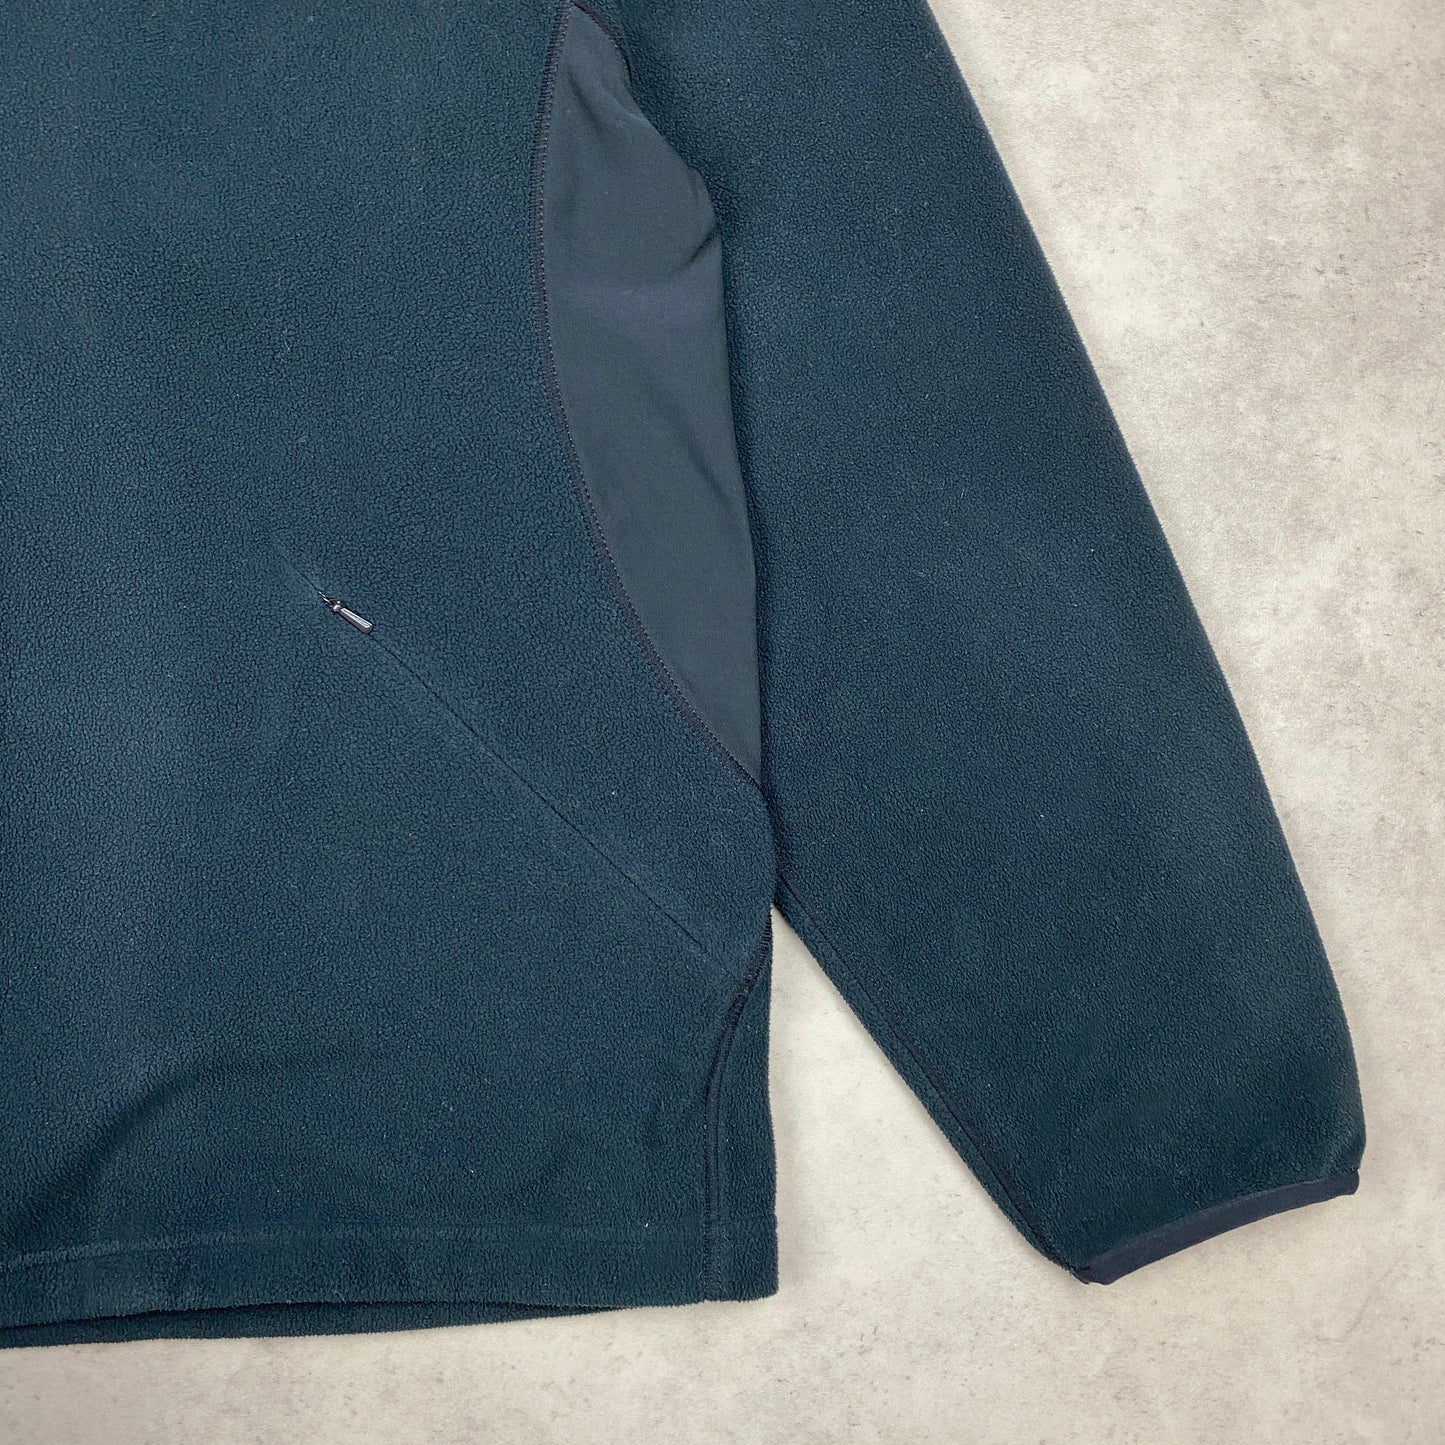 Nike fleece zip sweater (L)